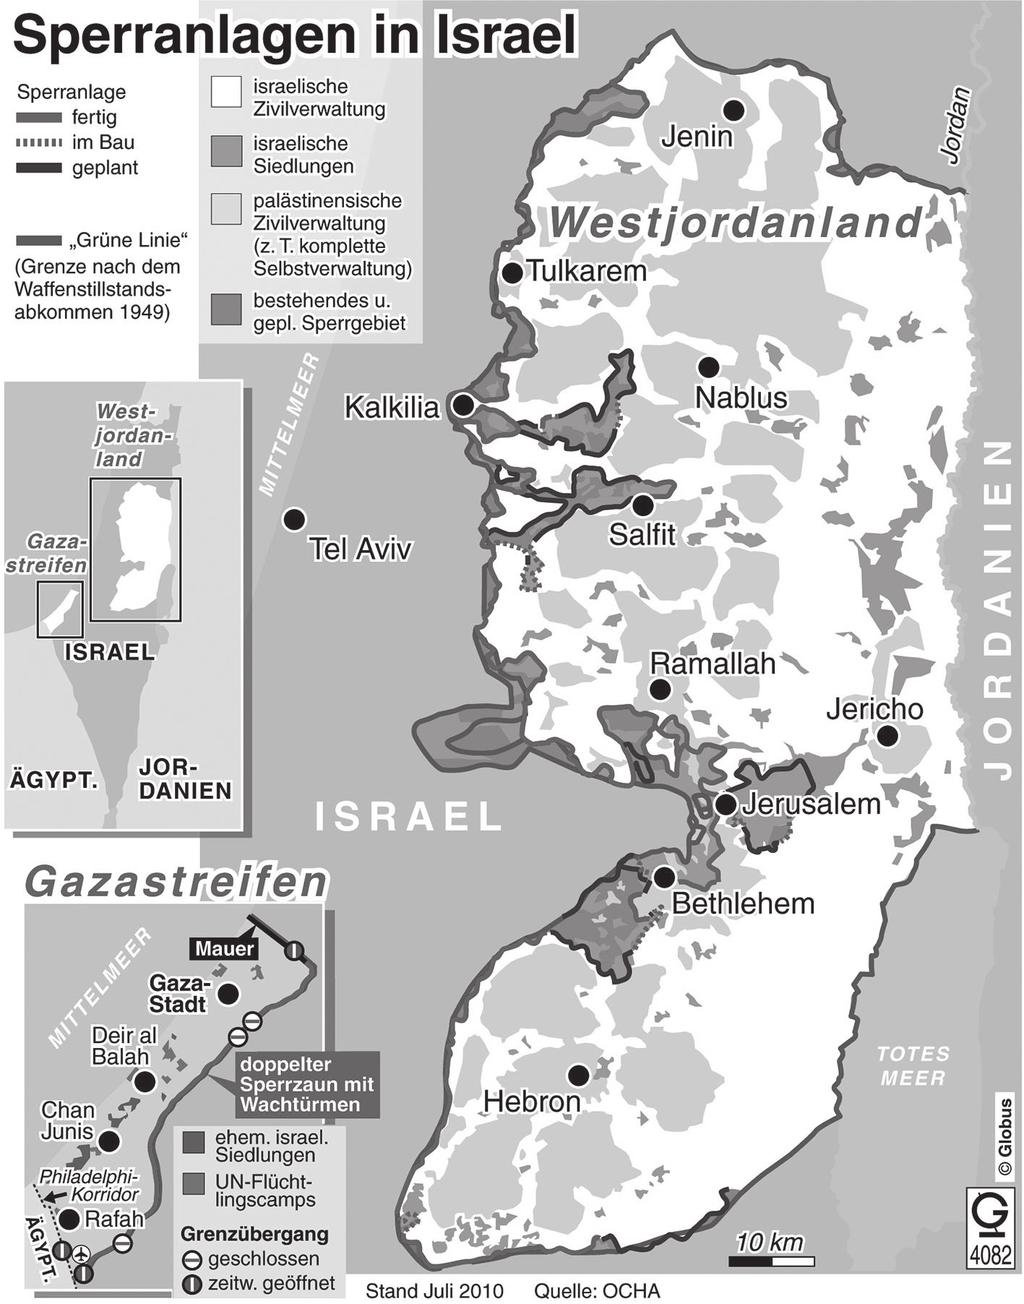 Anmerkung: Seit dem Sechs-Tage-Krieg sind der Gazastreifen und das Westjordanland von Israel besetzt. Seit 1996 verfügen die Palästinenser über begrenzte Selbstverwaltungsbefugnisse.